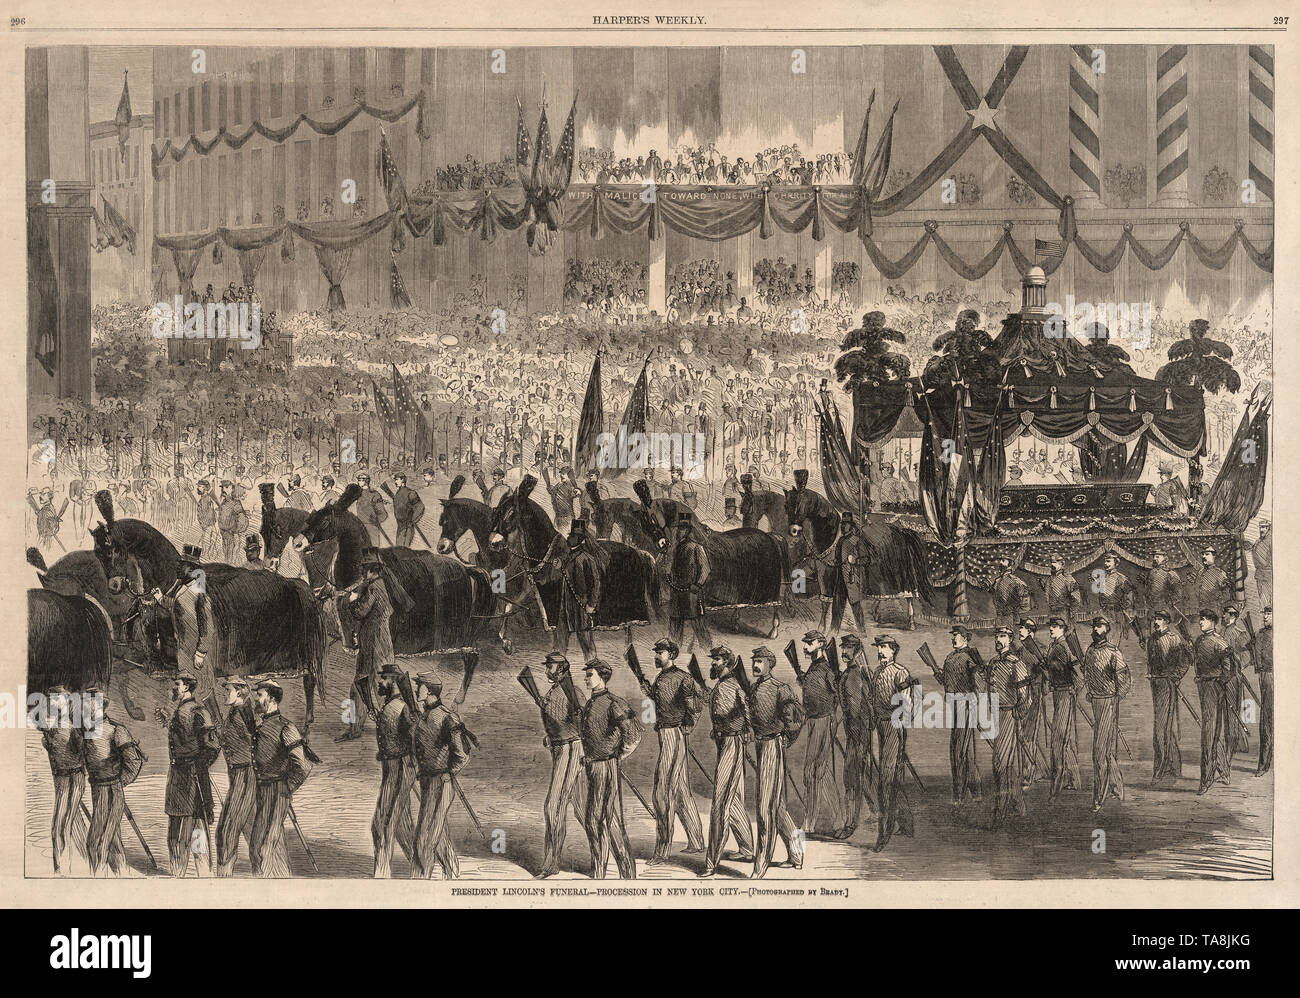 Le président Lincoln's Funeral procession dans la ville de New York (photographié par Brady), Harper's Weekly Magazine, mai 13, 1865 Banque D'Images